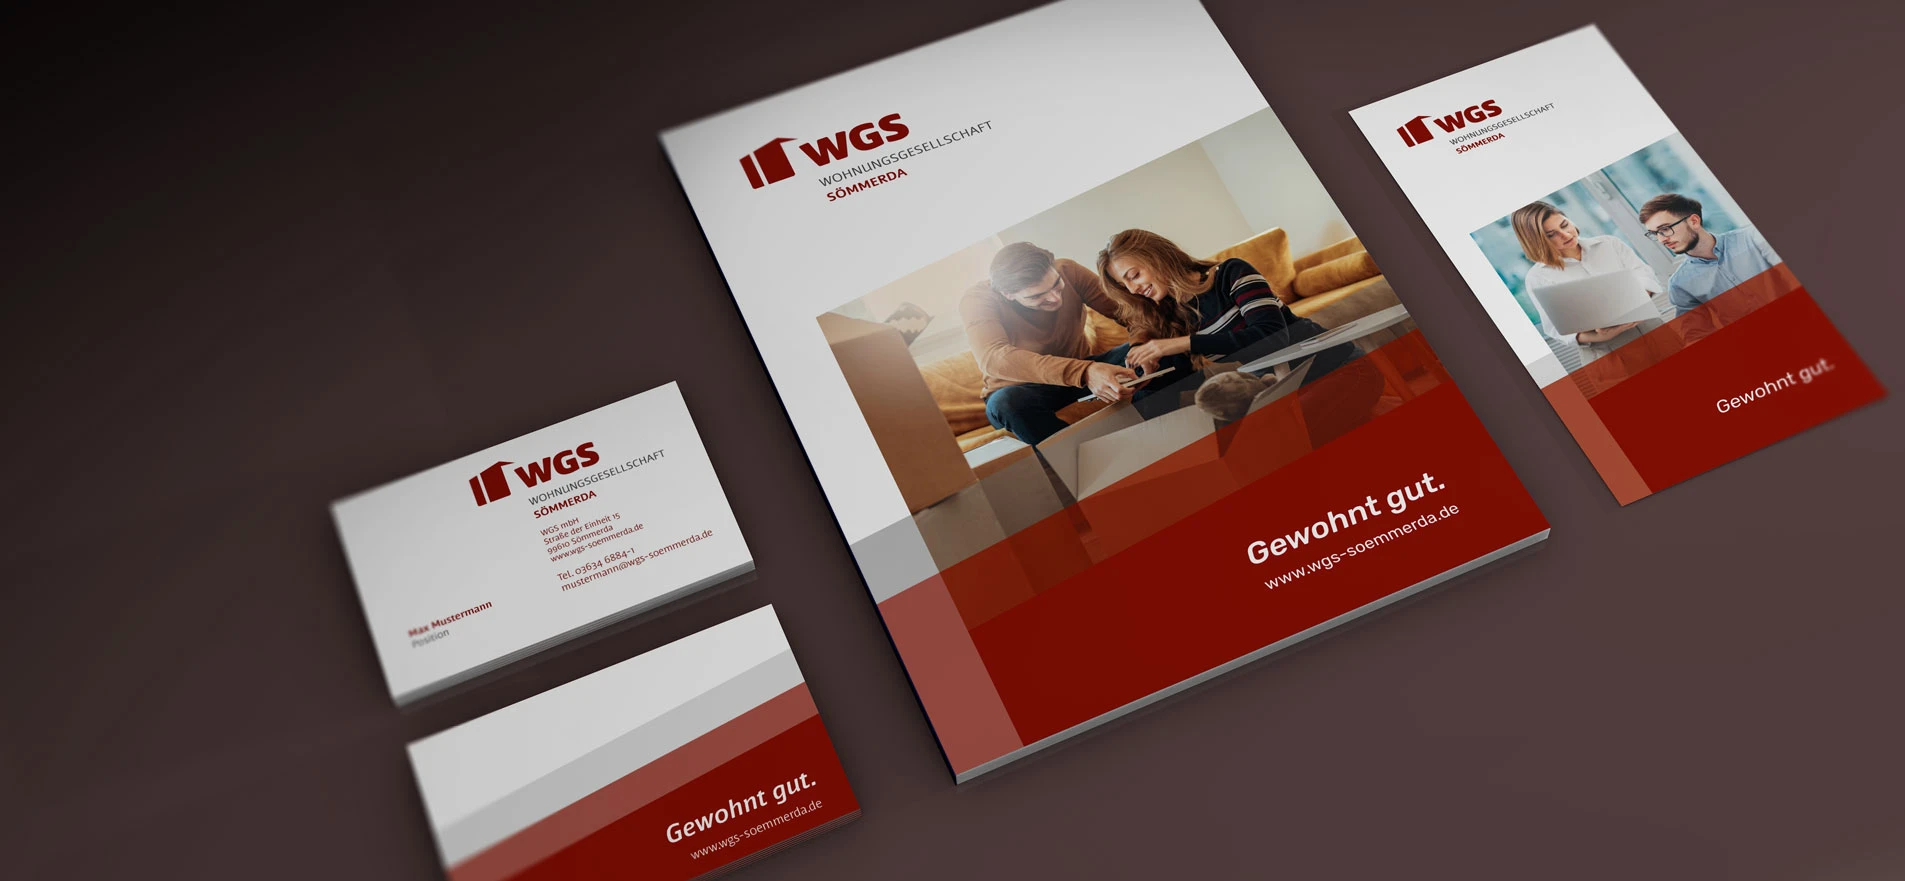 WGS Marken-Relaunch und Corporate Design